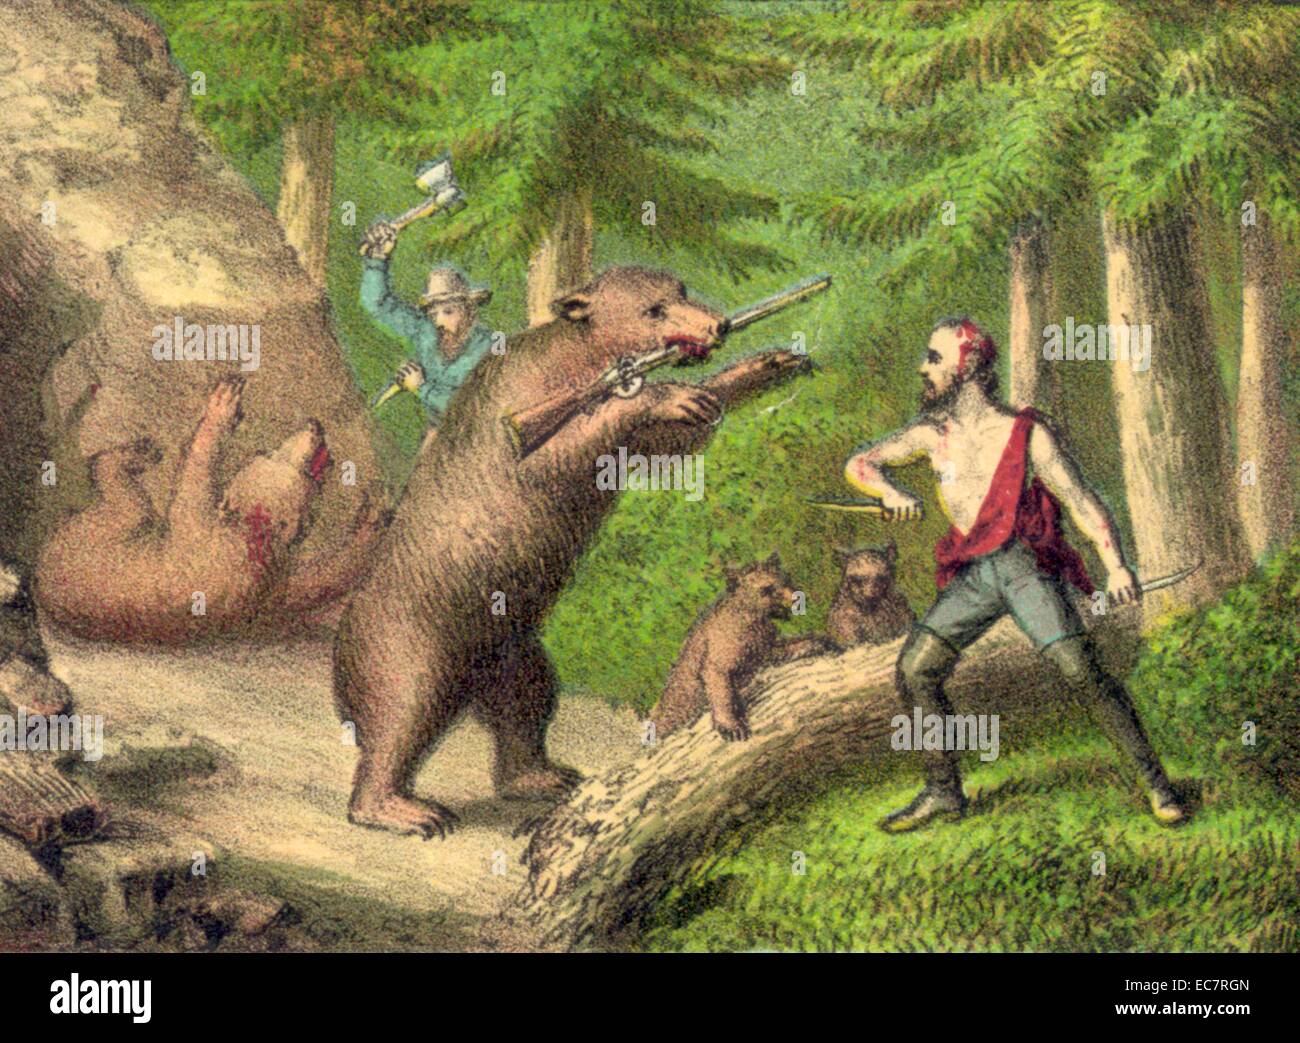 Amerikanische holzfällern Jagd auf Bären in den Wäldern in der Mitte des 19. Jahrhunderts. Das Recht, Waffen zu tragen, ist vielleicht in dieser Abbildung verspottet Stockfoto